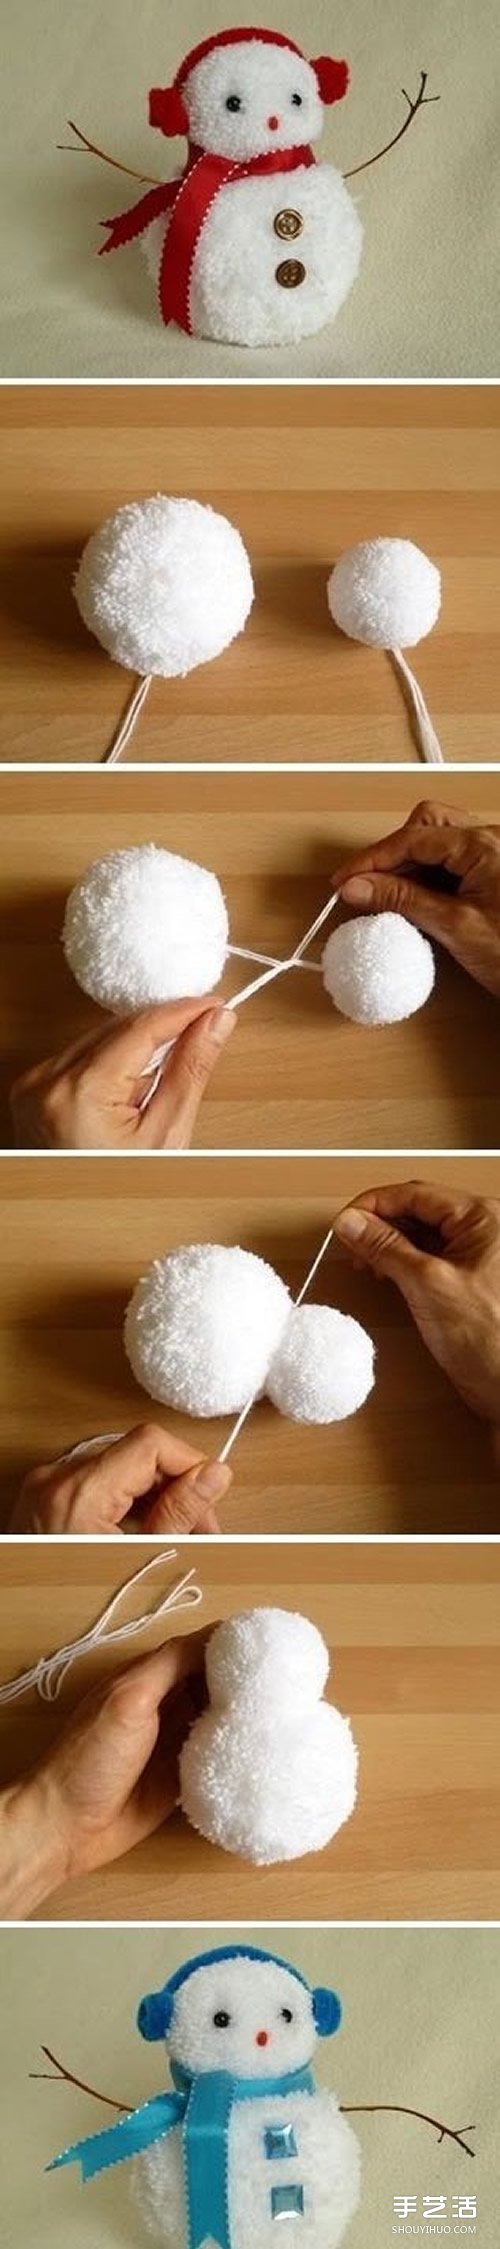 可爱毛线雪人手工制作 毛线球雪人玩偶DIY教程